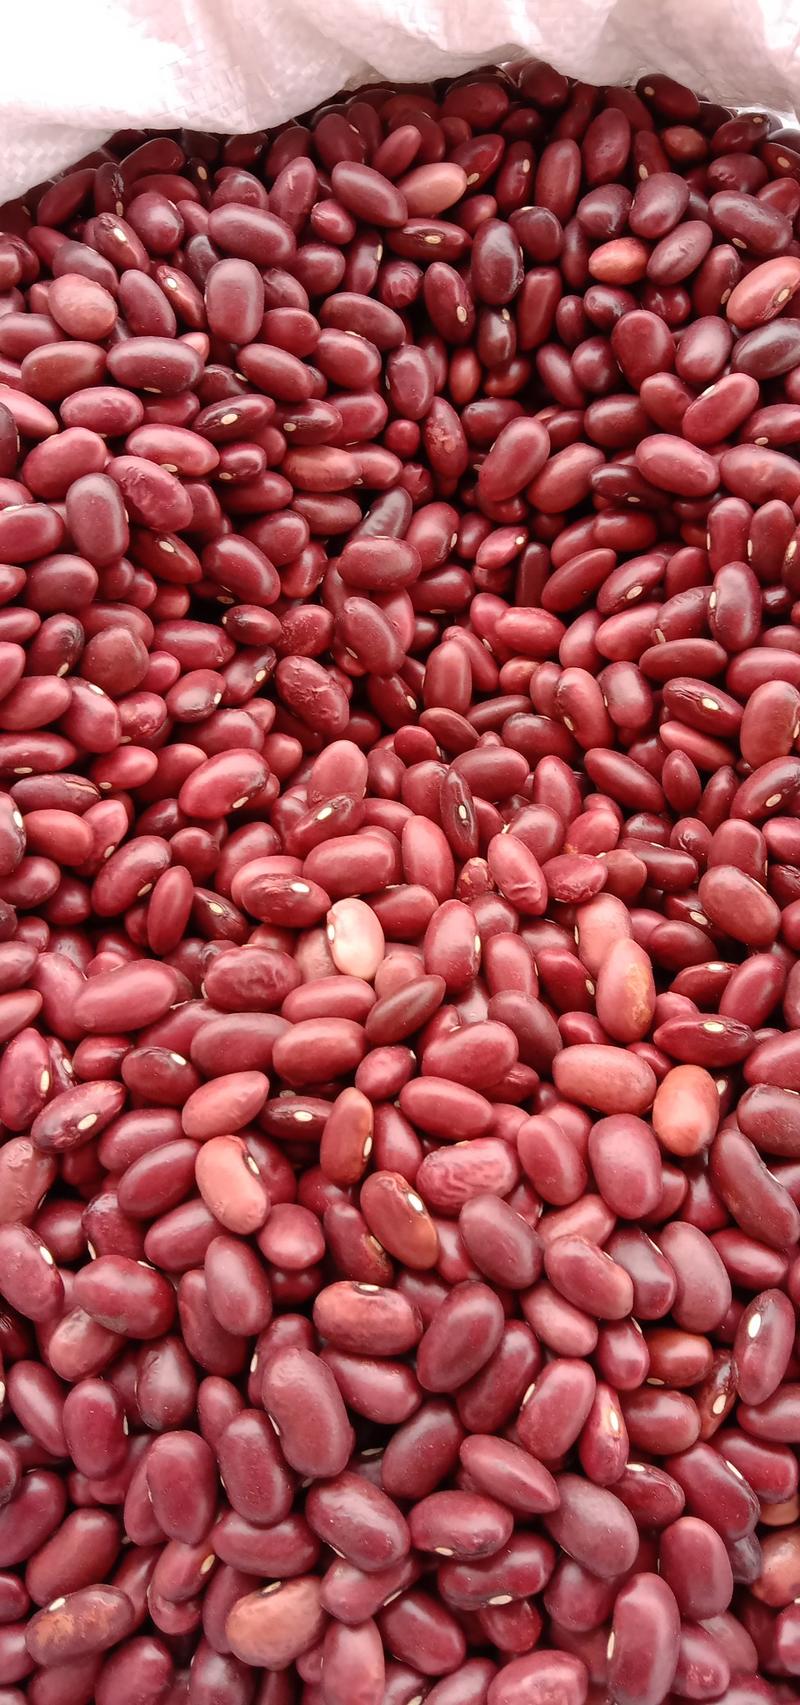 农副产品豆类红豆